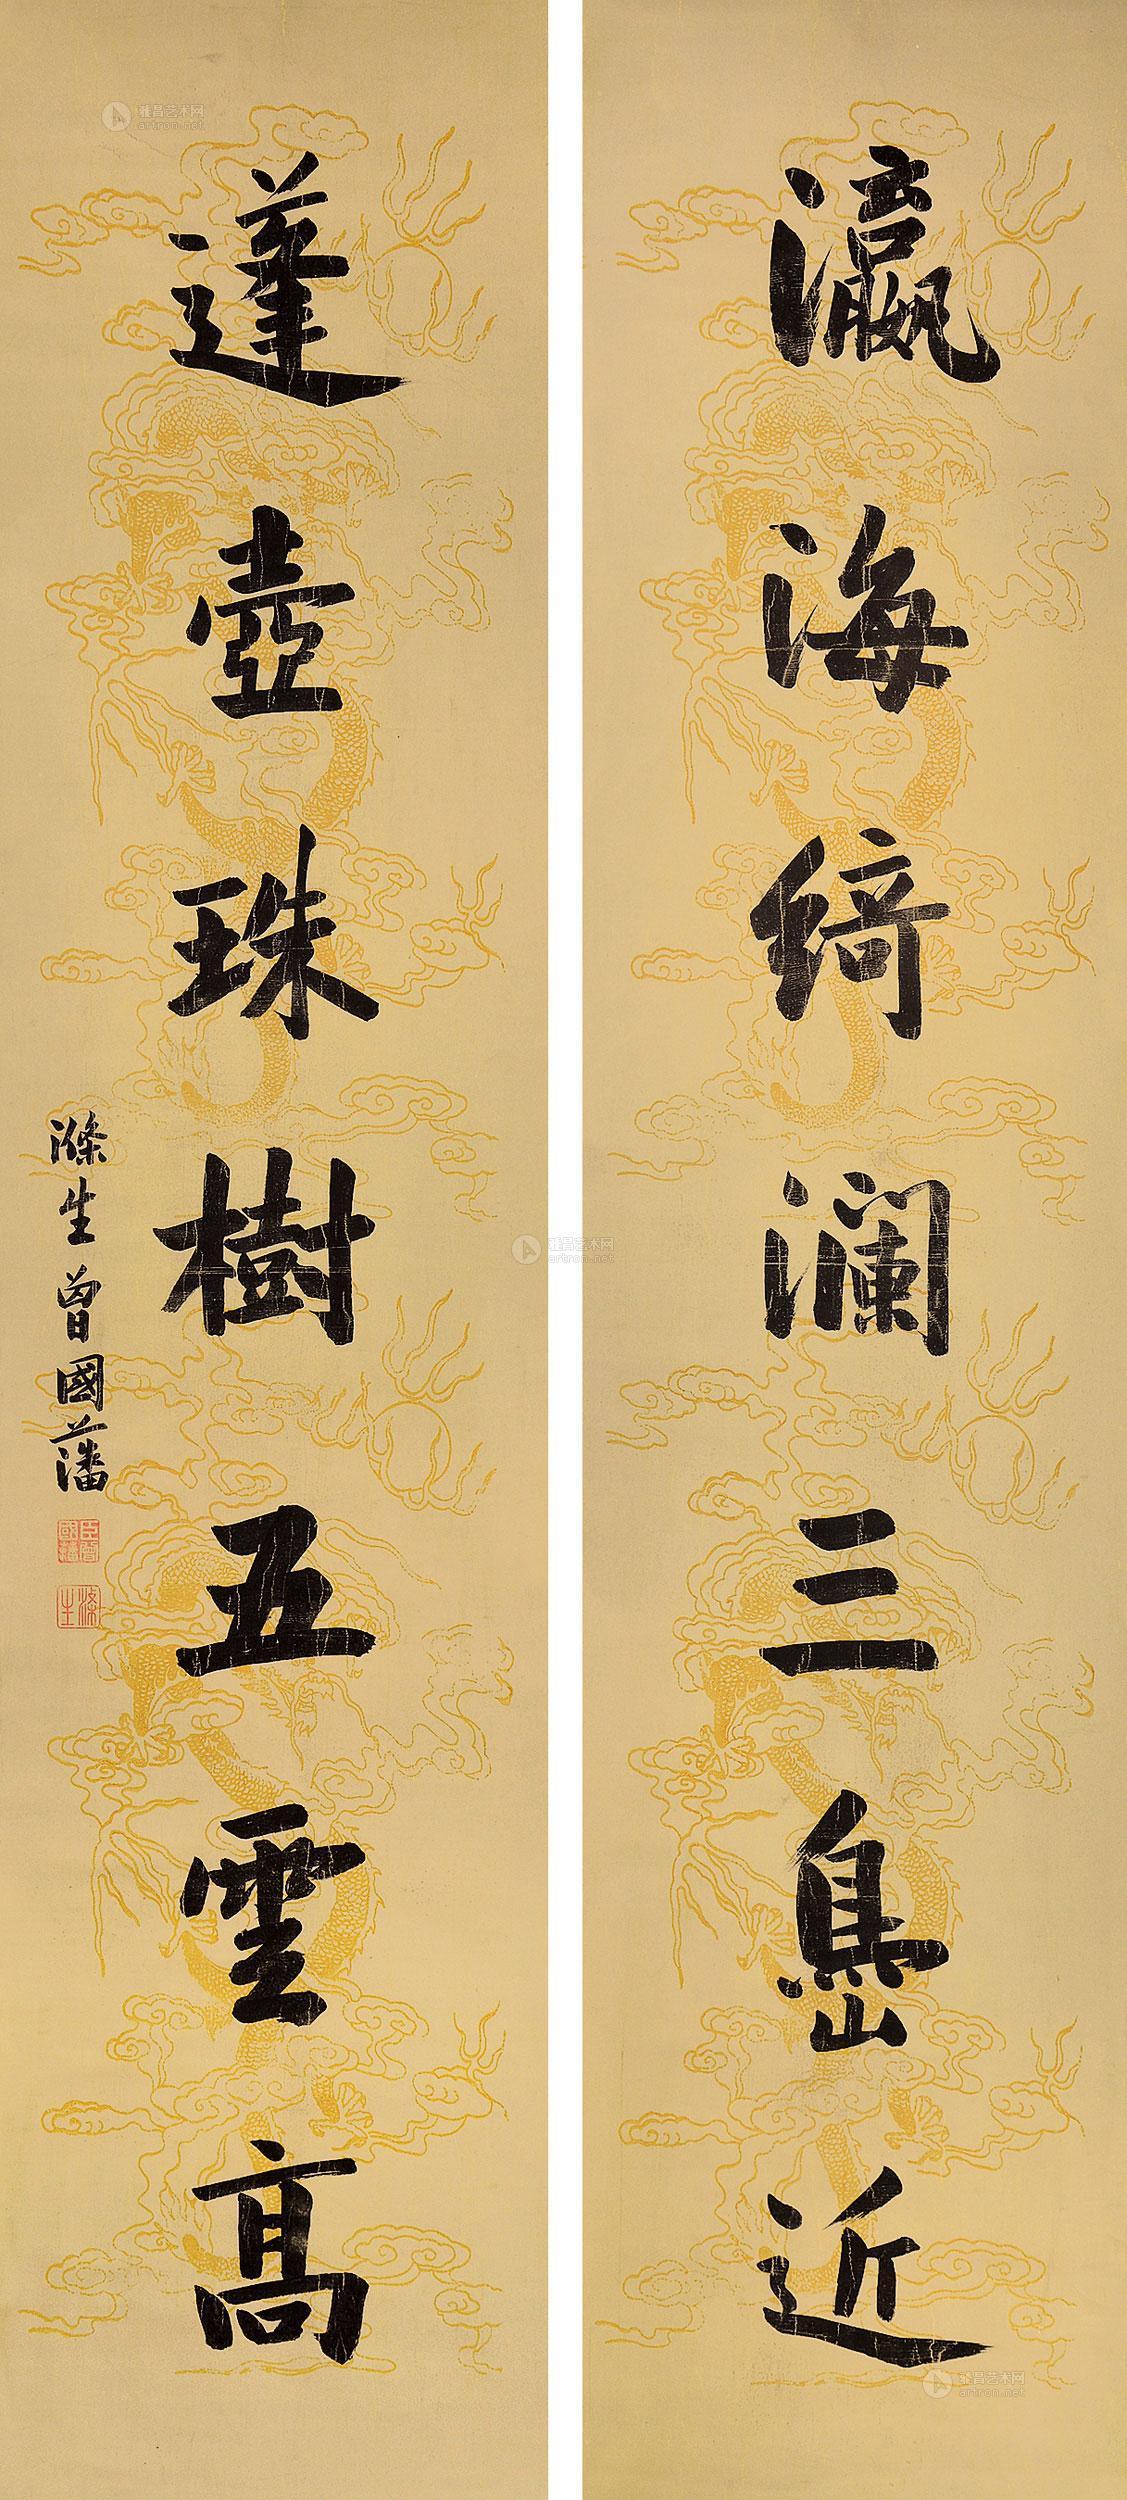 七言对联 立轴作者曾国藩拍品分类中国书画